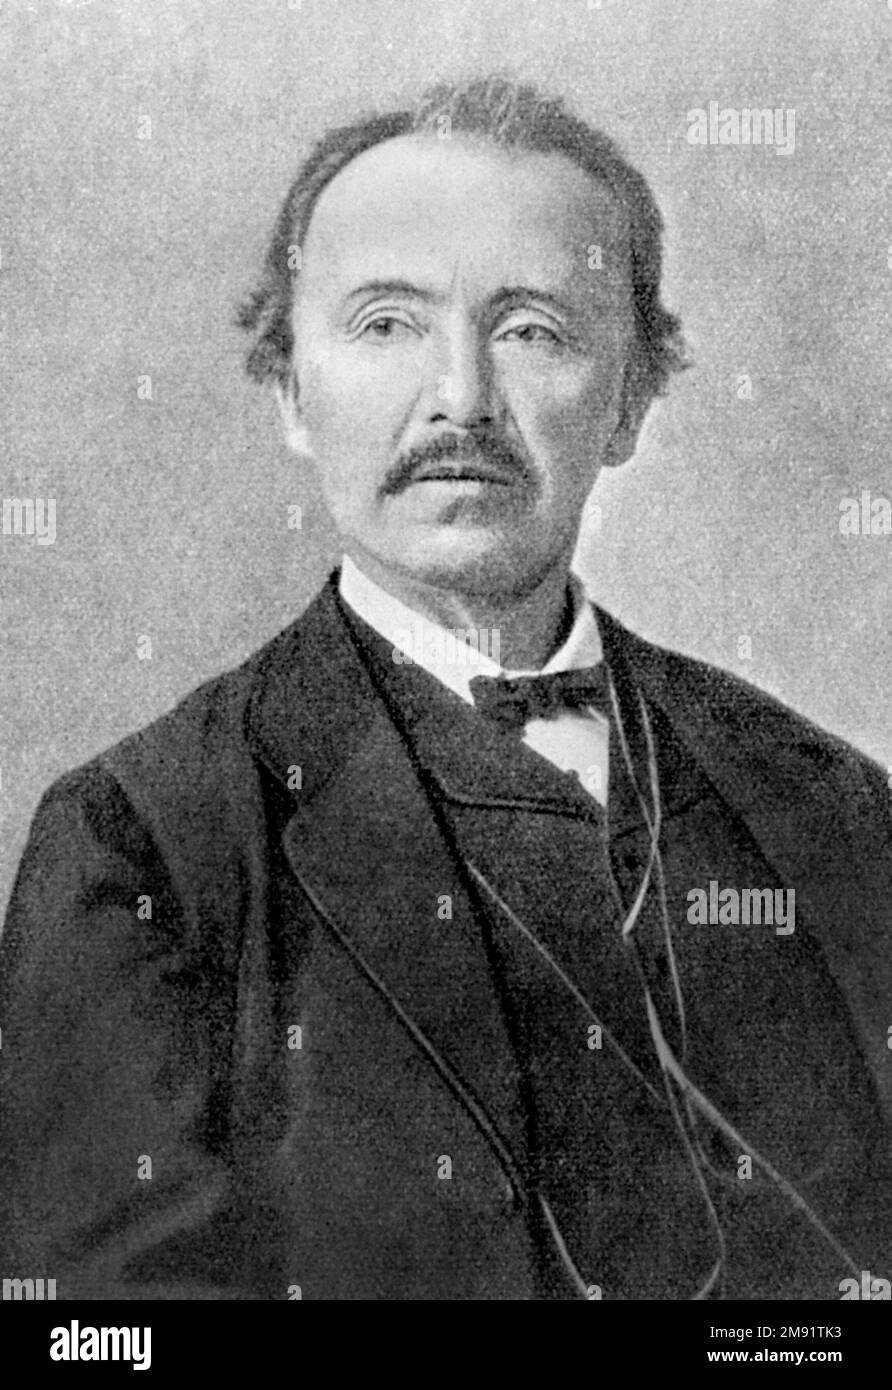 Heinrich Schliemann. Portrait de l'homme d'affaires et archéologue allemand Johann Ludwig Heinrich Julius Schliemann (1822-1890), impression photomécanique, vers 1880 Banque D'Images